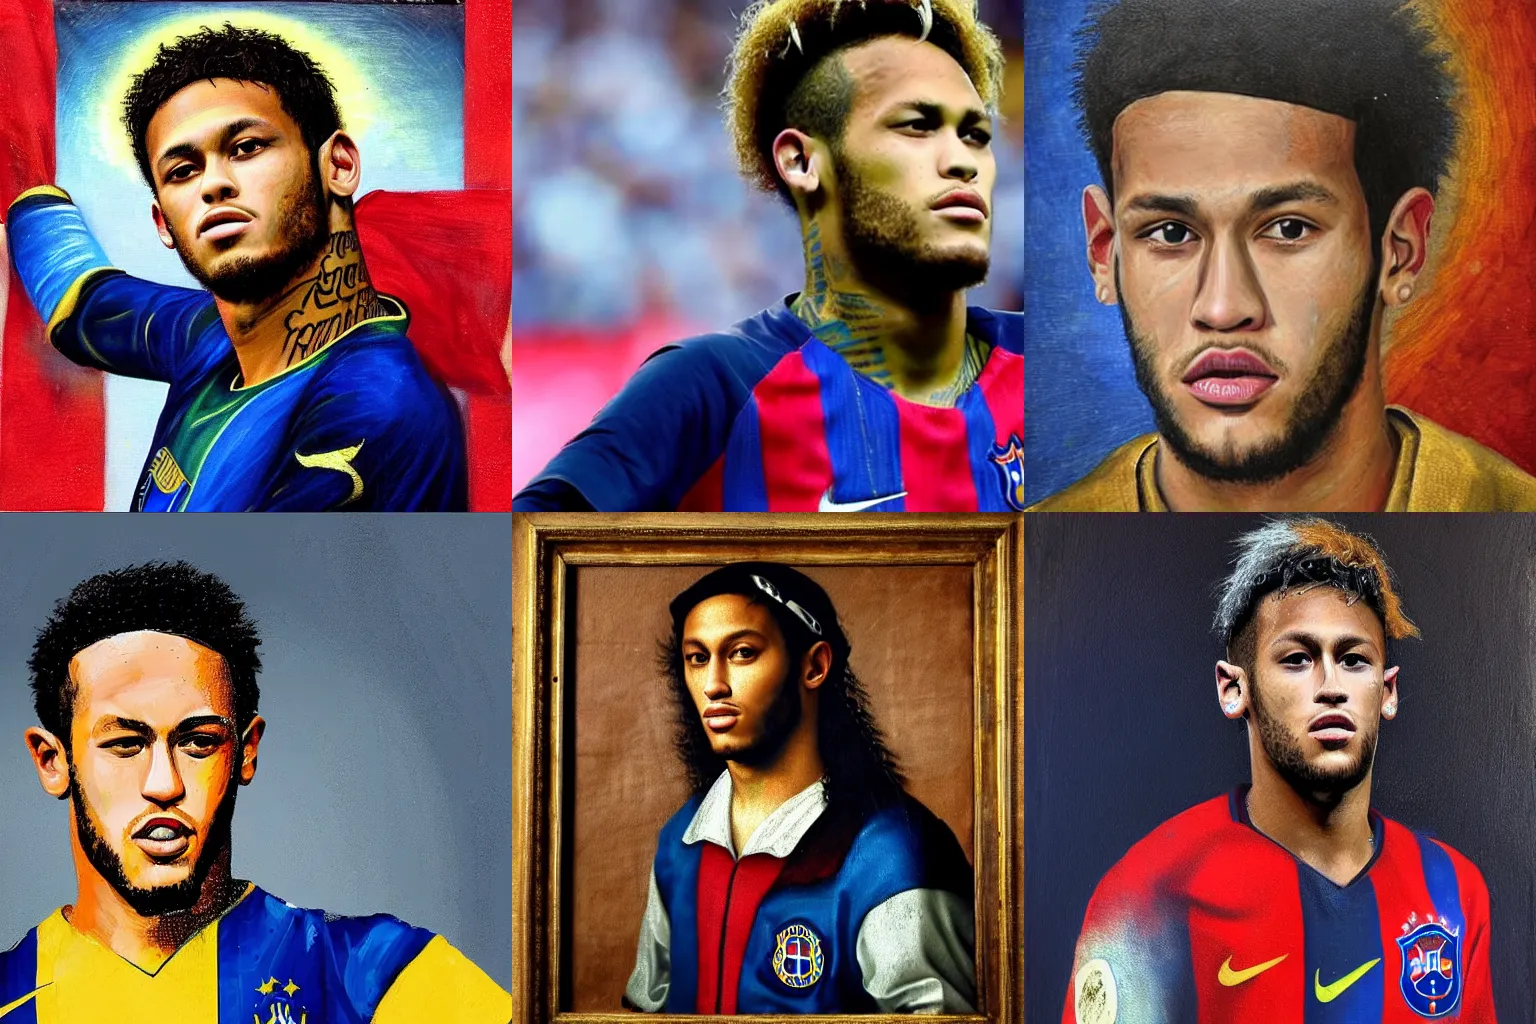 Prompt: A Renaissance portrait painting of Neymar